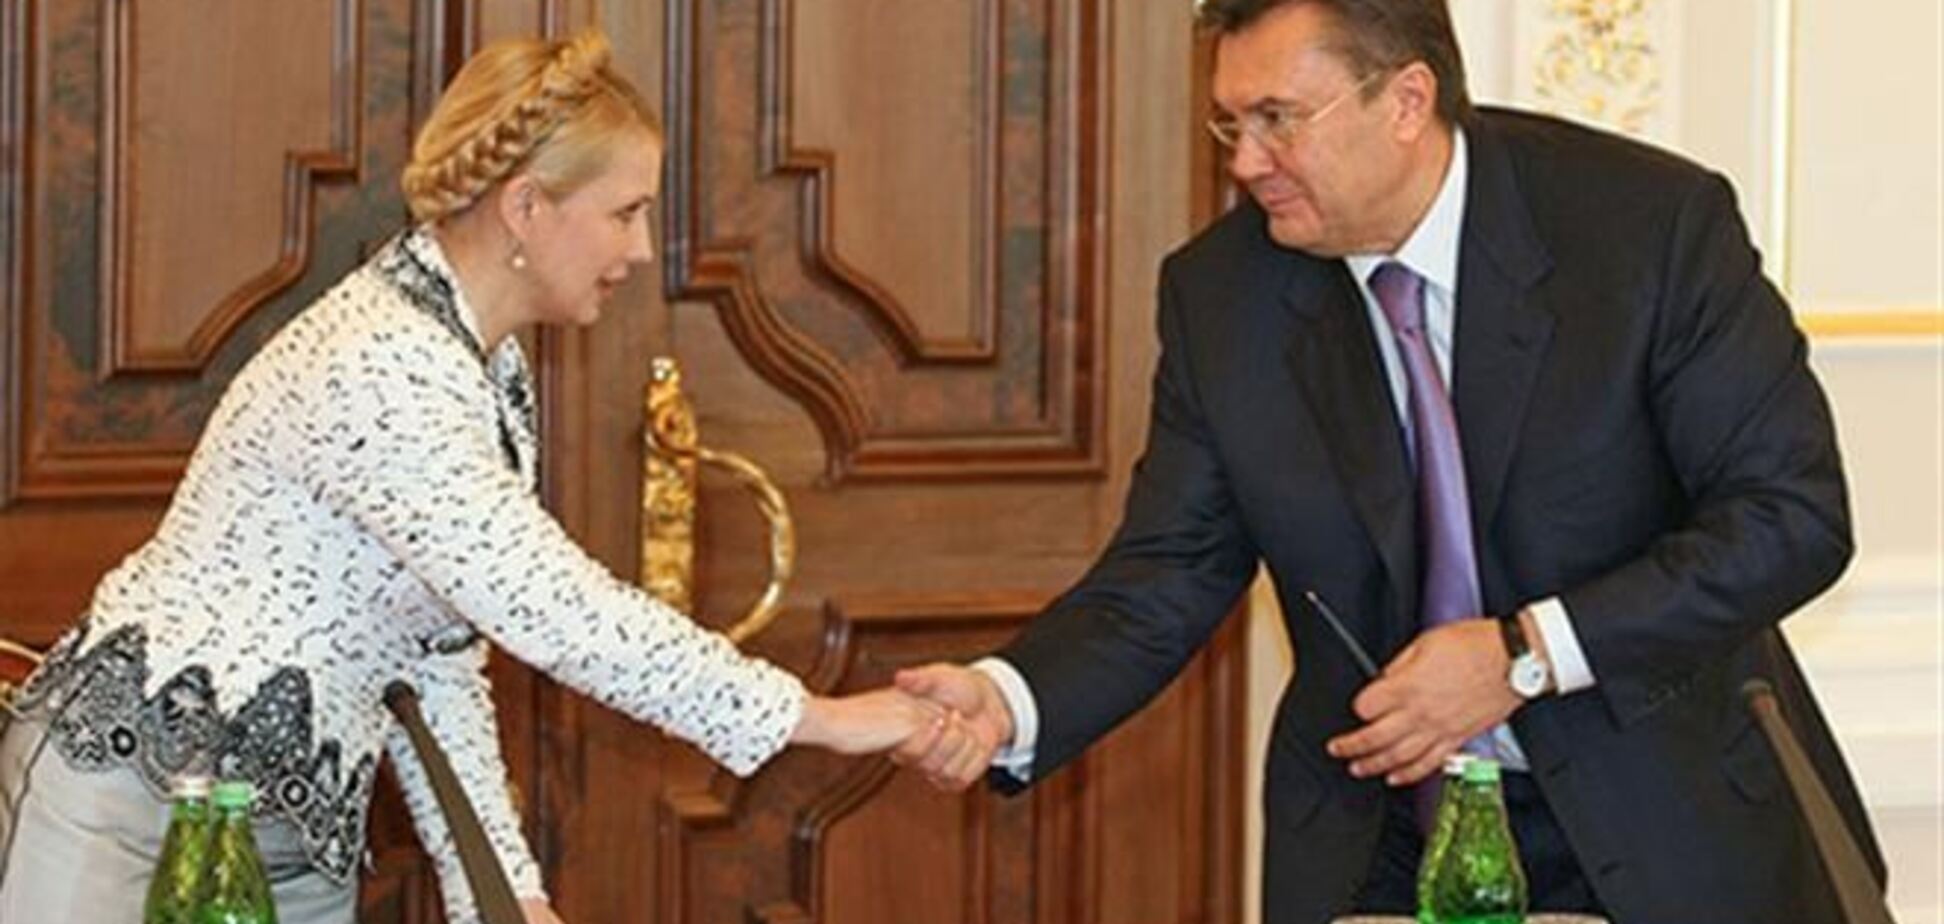 Герман намекнула Тимошенко написать Януковичу о помиловании